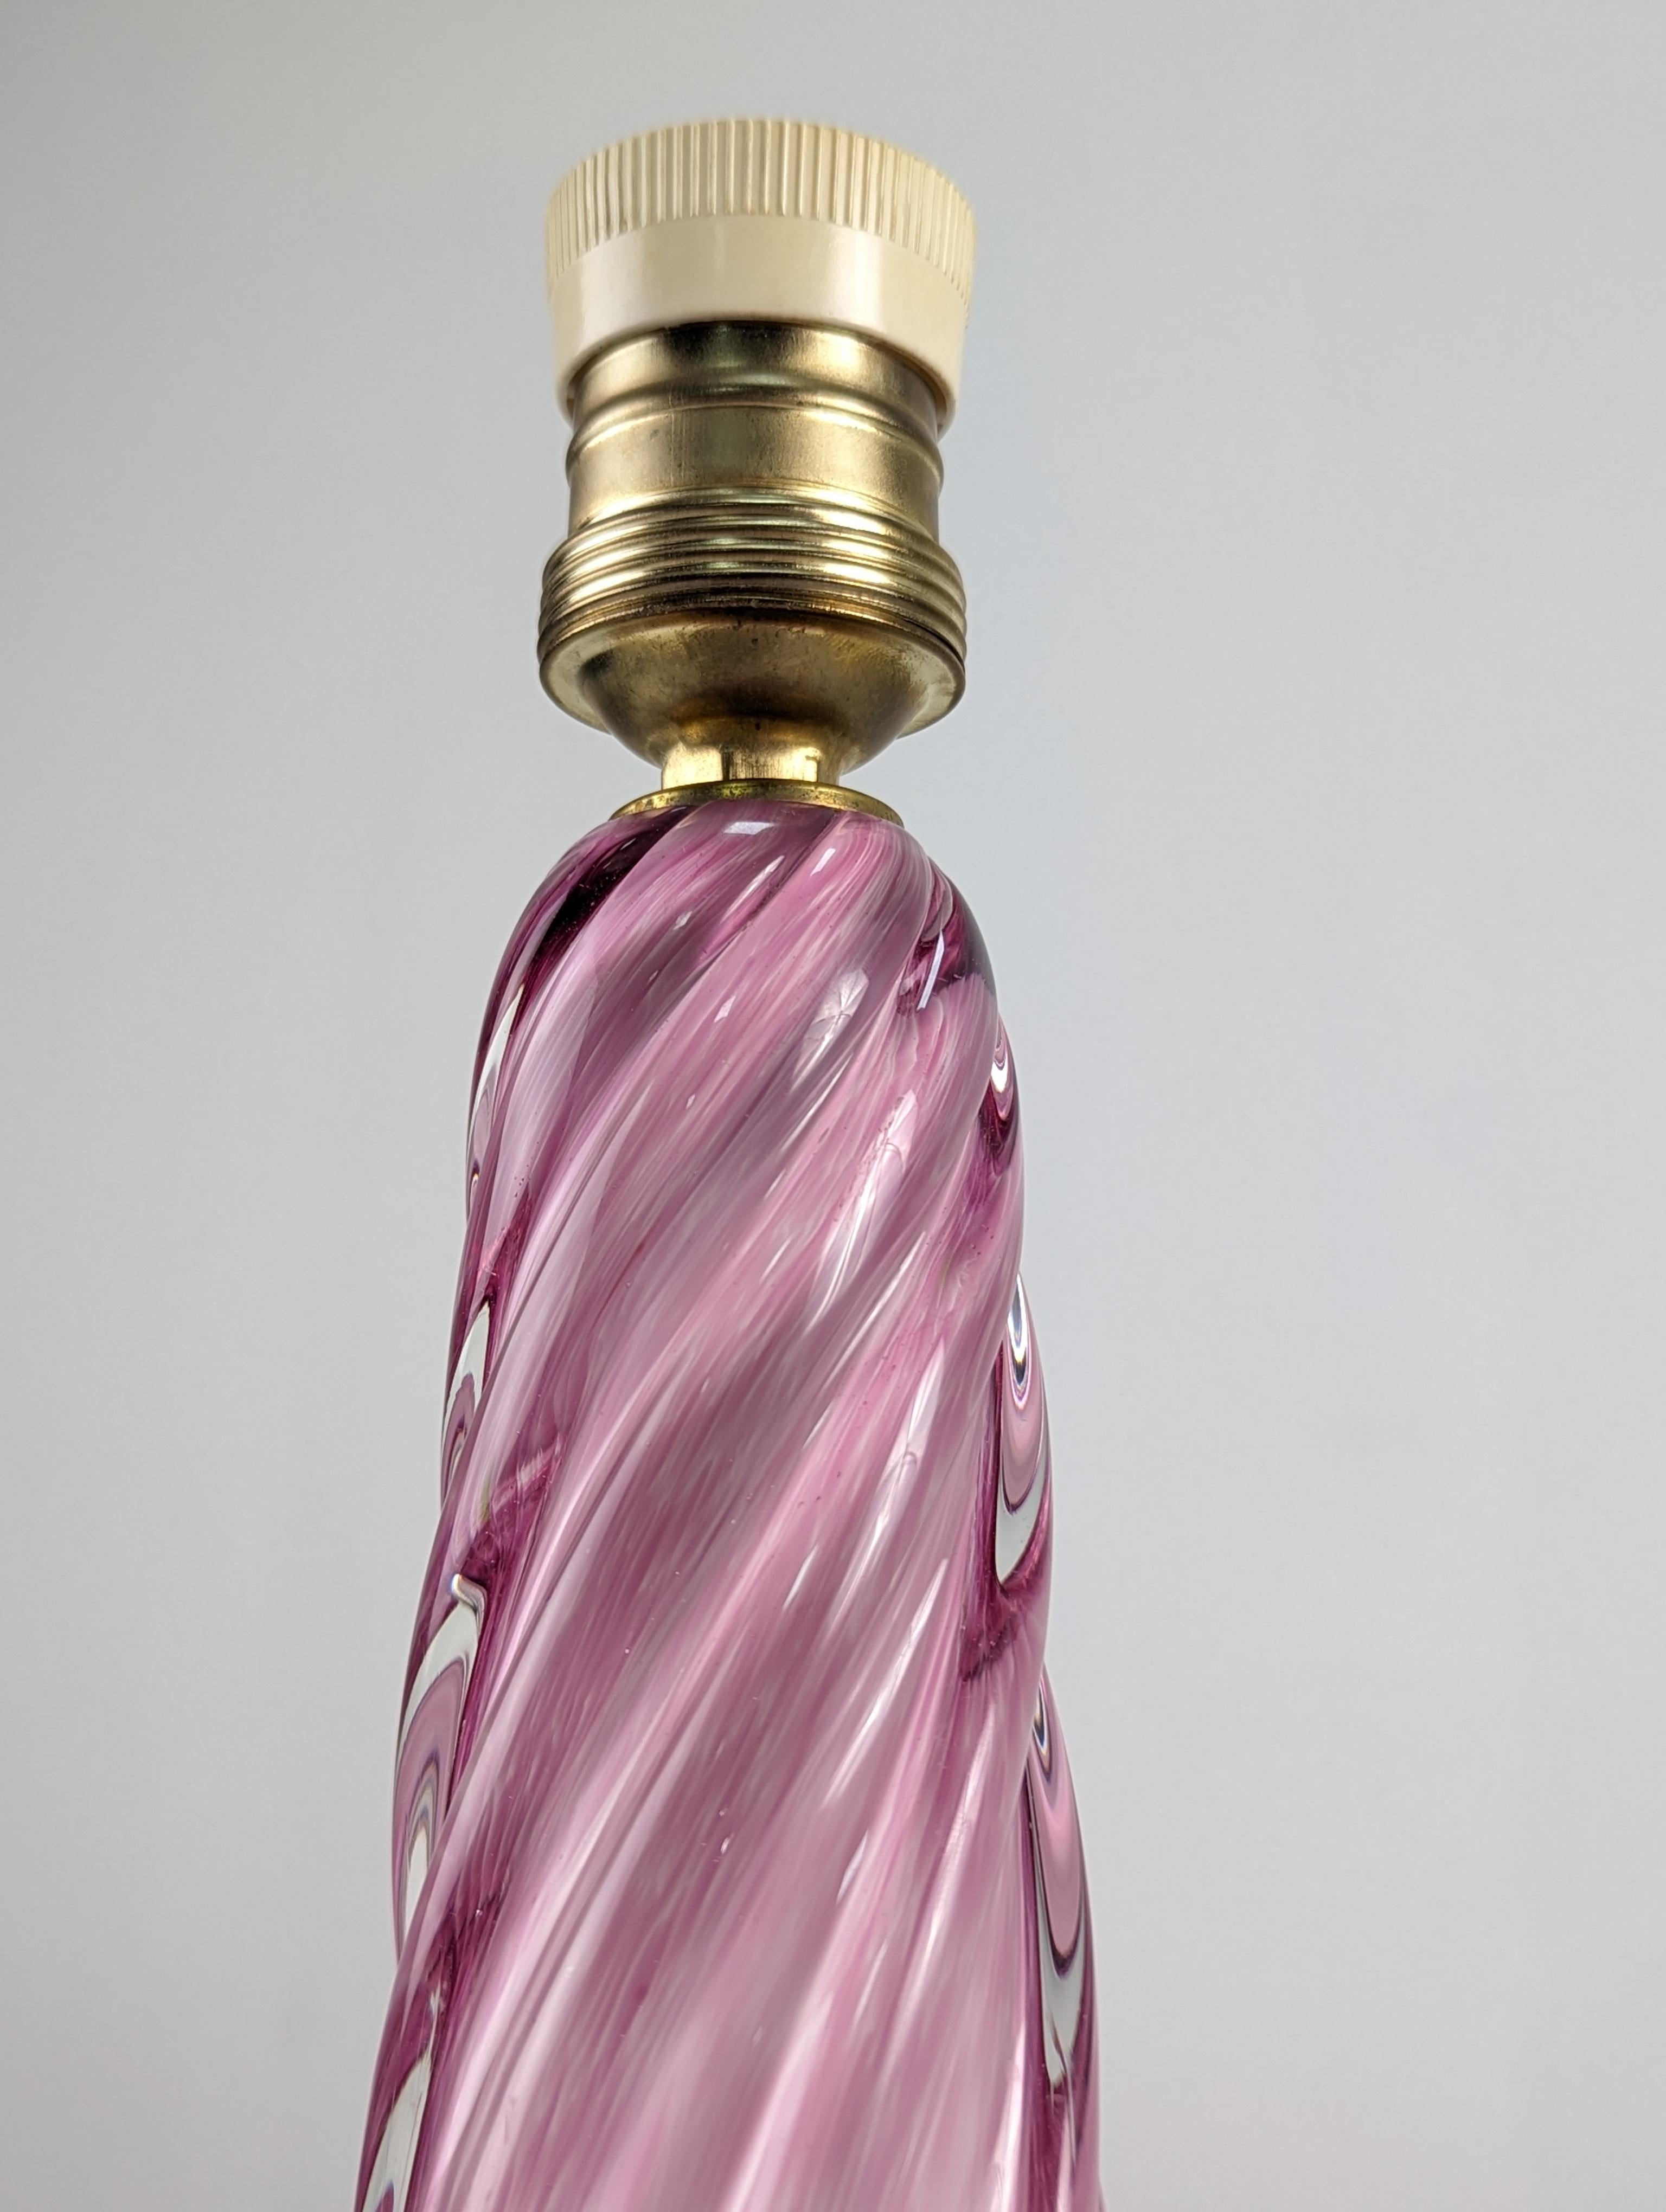 Schöne Spirale Murano-Glas-Lampe aus den 60er Jahren zugeschrieben Seguso Vetri d'Arte in einer schönen rosa Farbe mit einem Wasser-Effekt im Inneren. Eine außerordentlich elegante Lampe, die jeden Raum und jede Dekoration verzaubert.